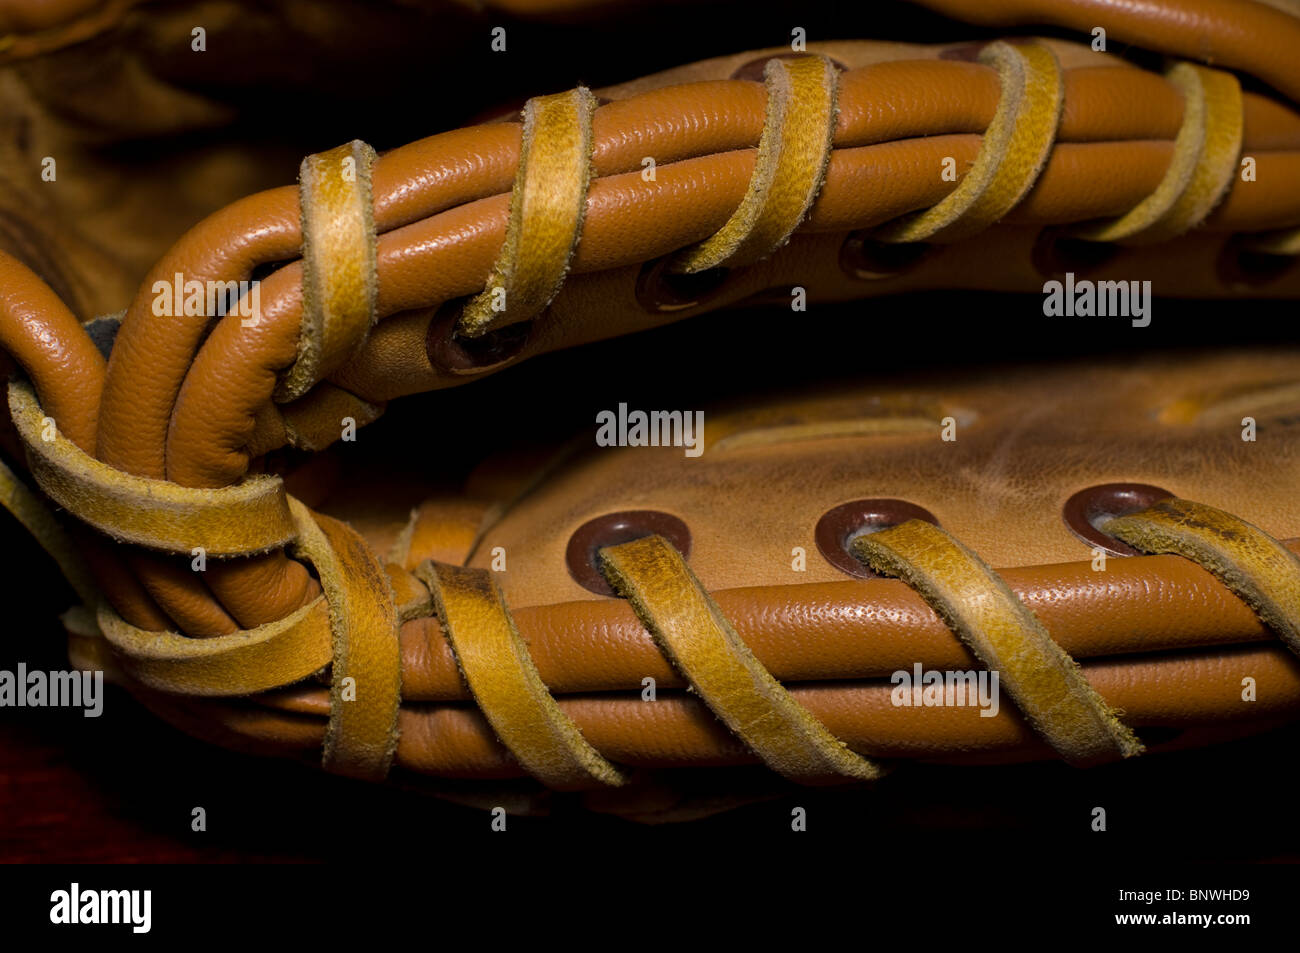 Close up artistique du talon d'une boule en cuir beige bien usé du gant couture. Le gant a clairement été bien utilisé. Banque D'Images